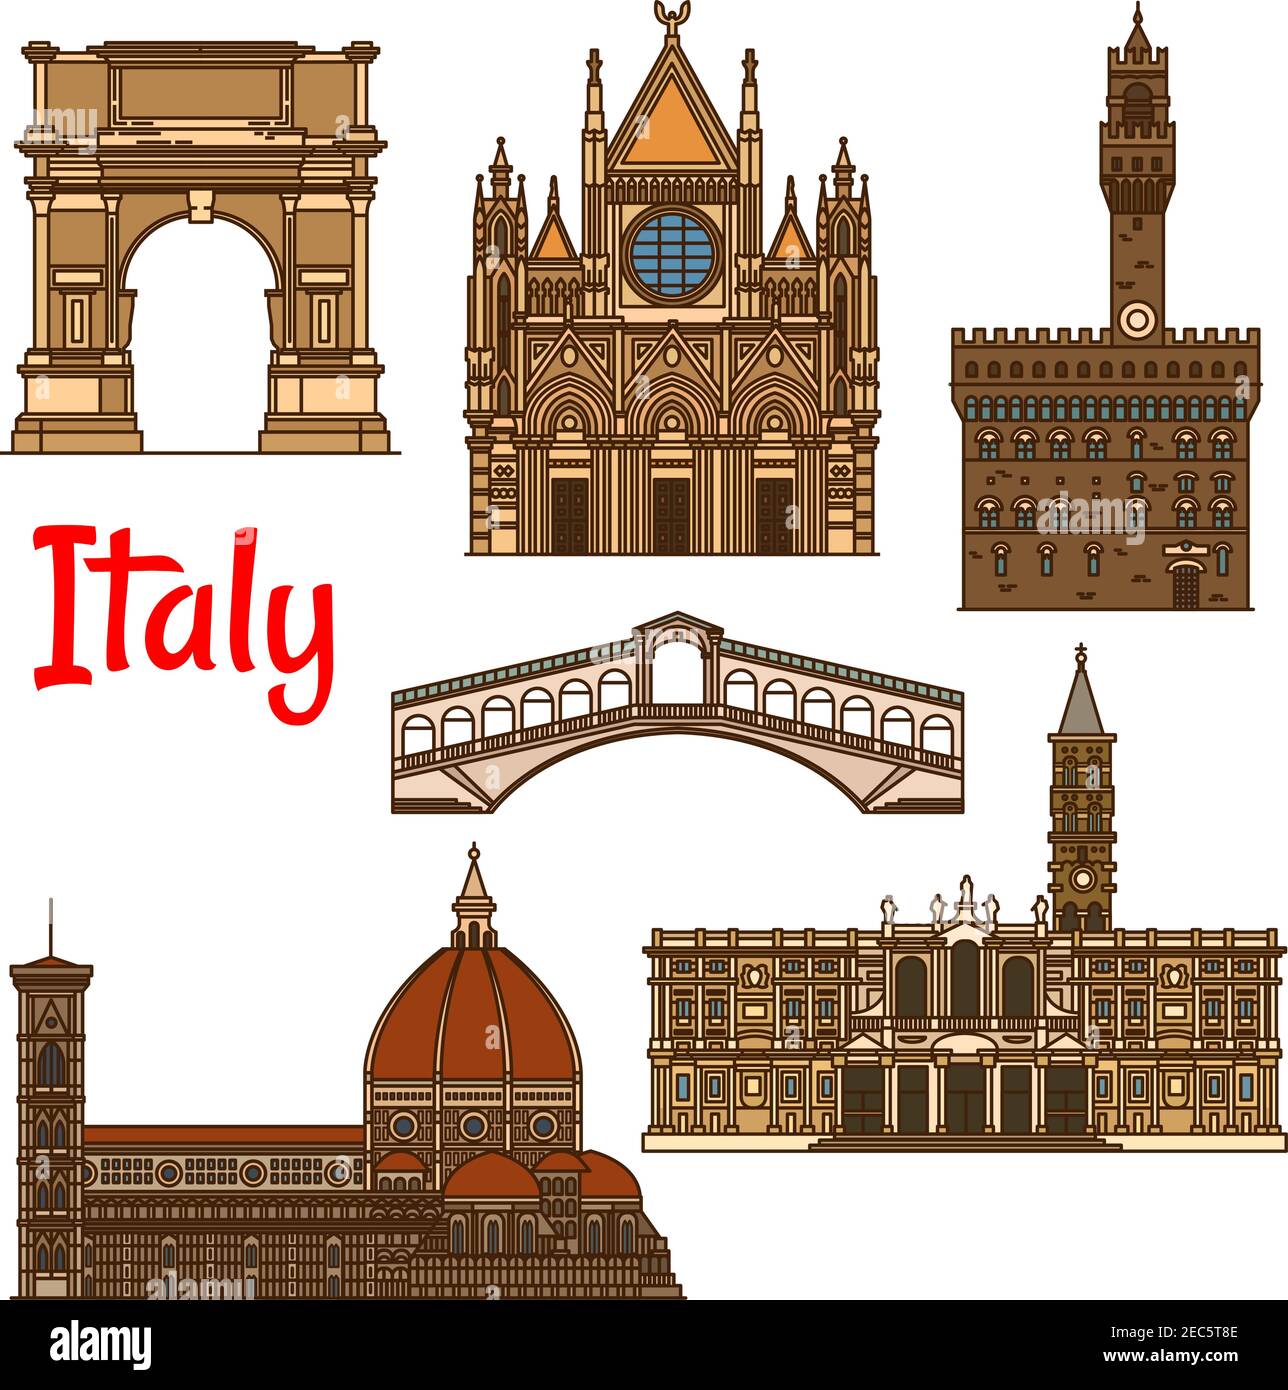 Tour storico italiano icona con la Cattedrale lineare di Firenze, la Chiesa di Santa Maria maggiore, la Cattedrale di Siena, il Ponte di Rialto, l'antico Arco di Illustrazione Vettoriale